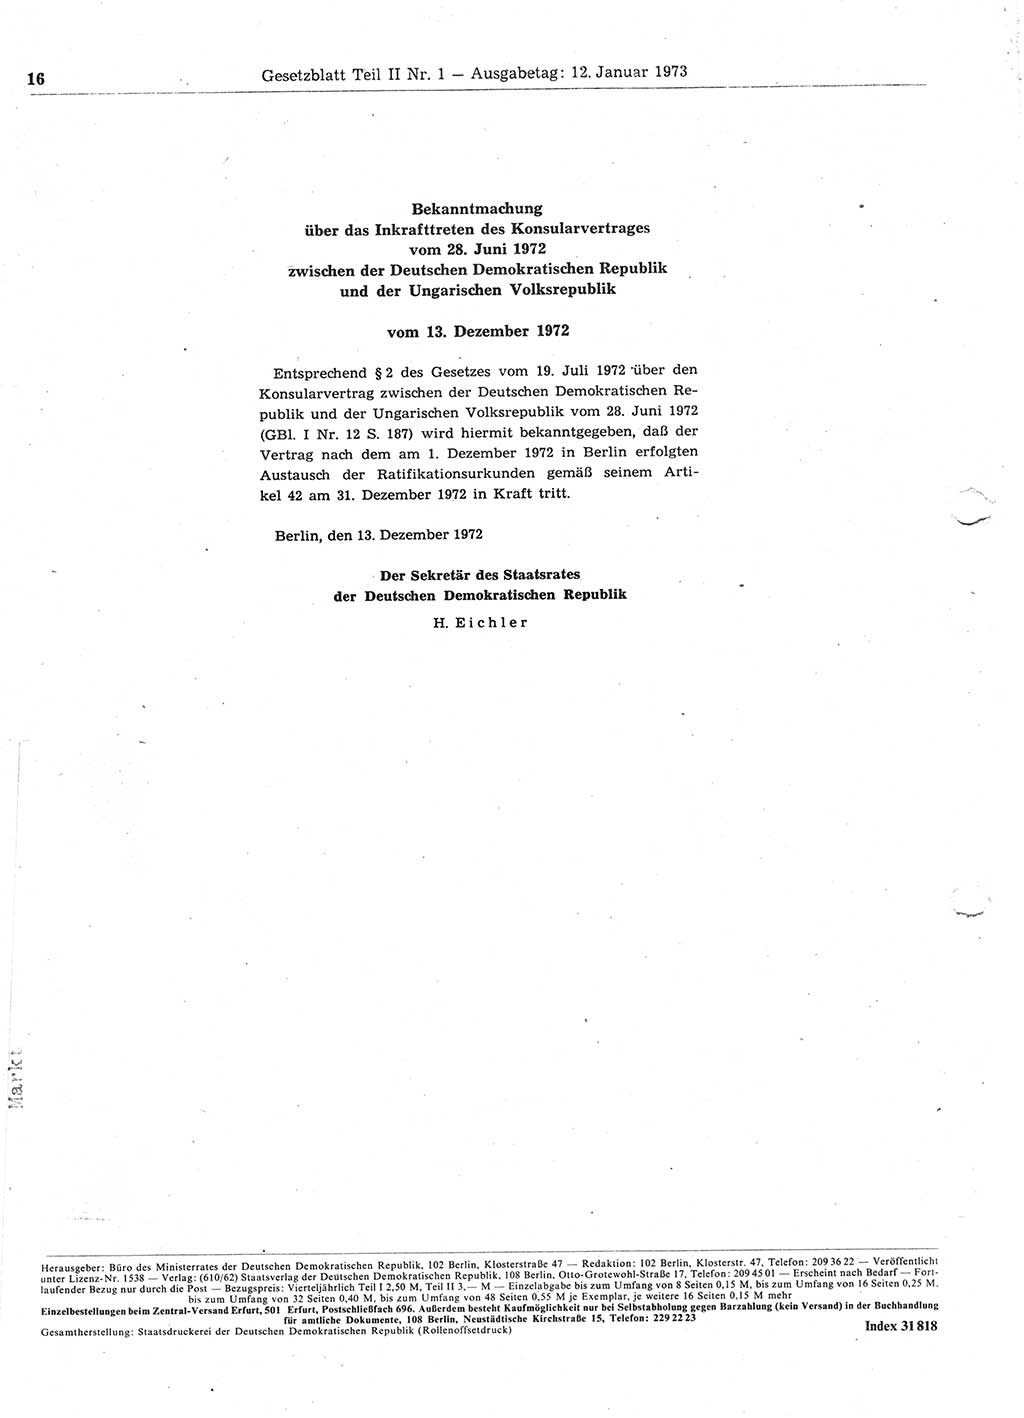 Gesetzblatt (GBl.) der Deutschen Demokratischen Republik (DDR) Teil ⅠⅠ 1973, Seite 16 (GBl. DDR ⅠⅠ 1973, S. 16)